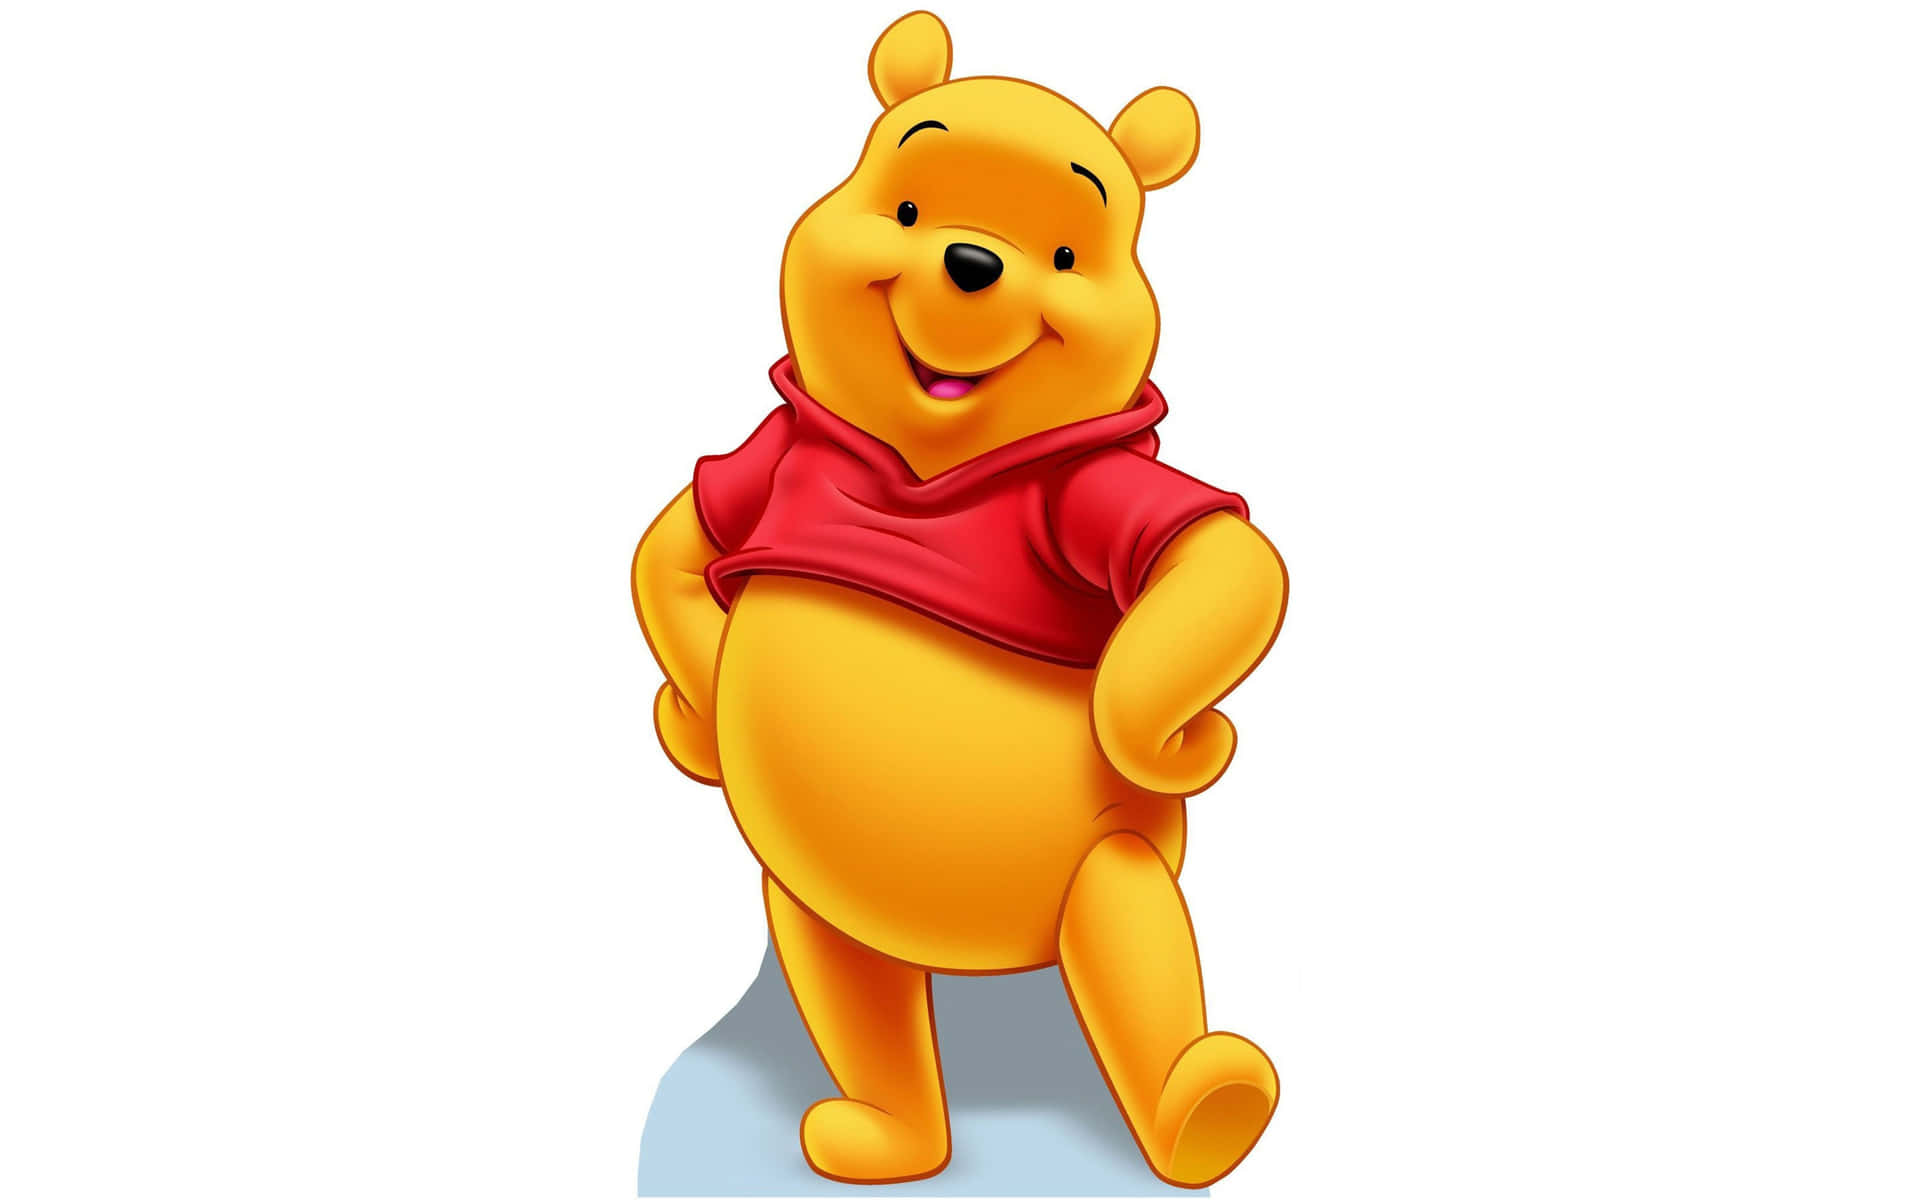 Nyd de enkle glæder i livet med Winnie The Pooh Wallpaper